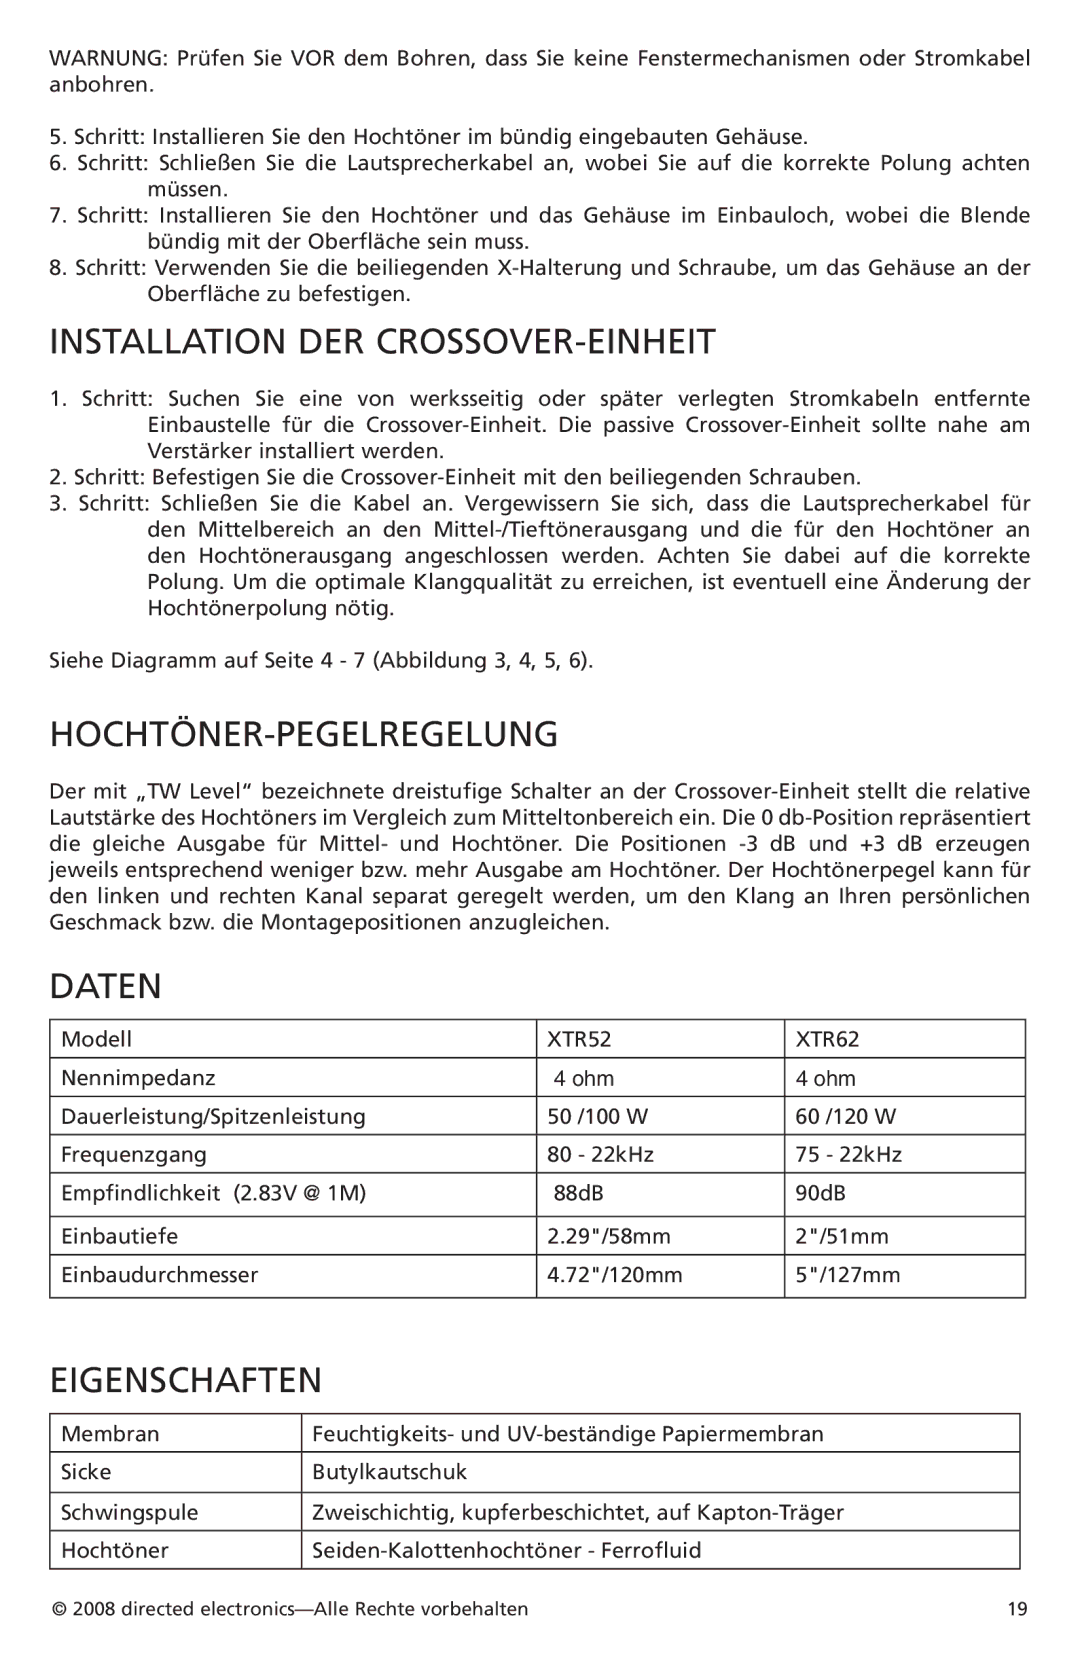 Orion Car Audio XTR52, XTR62 owner manual Installation DER CROSSOVER-EINHEIT, Hochtöner-Pegelregelung, Daten, Eigenschaften 